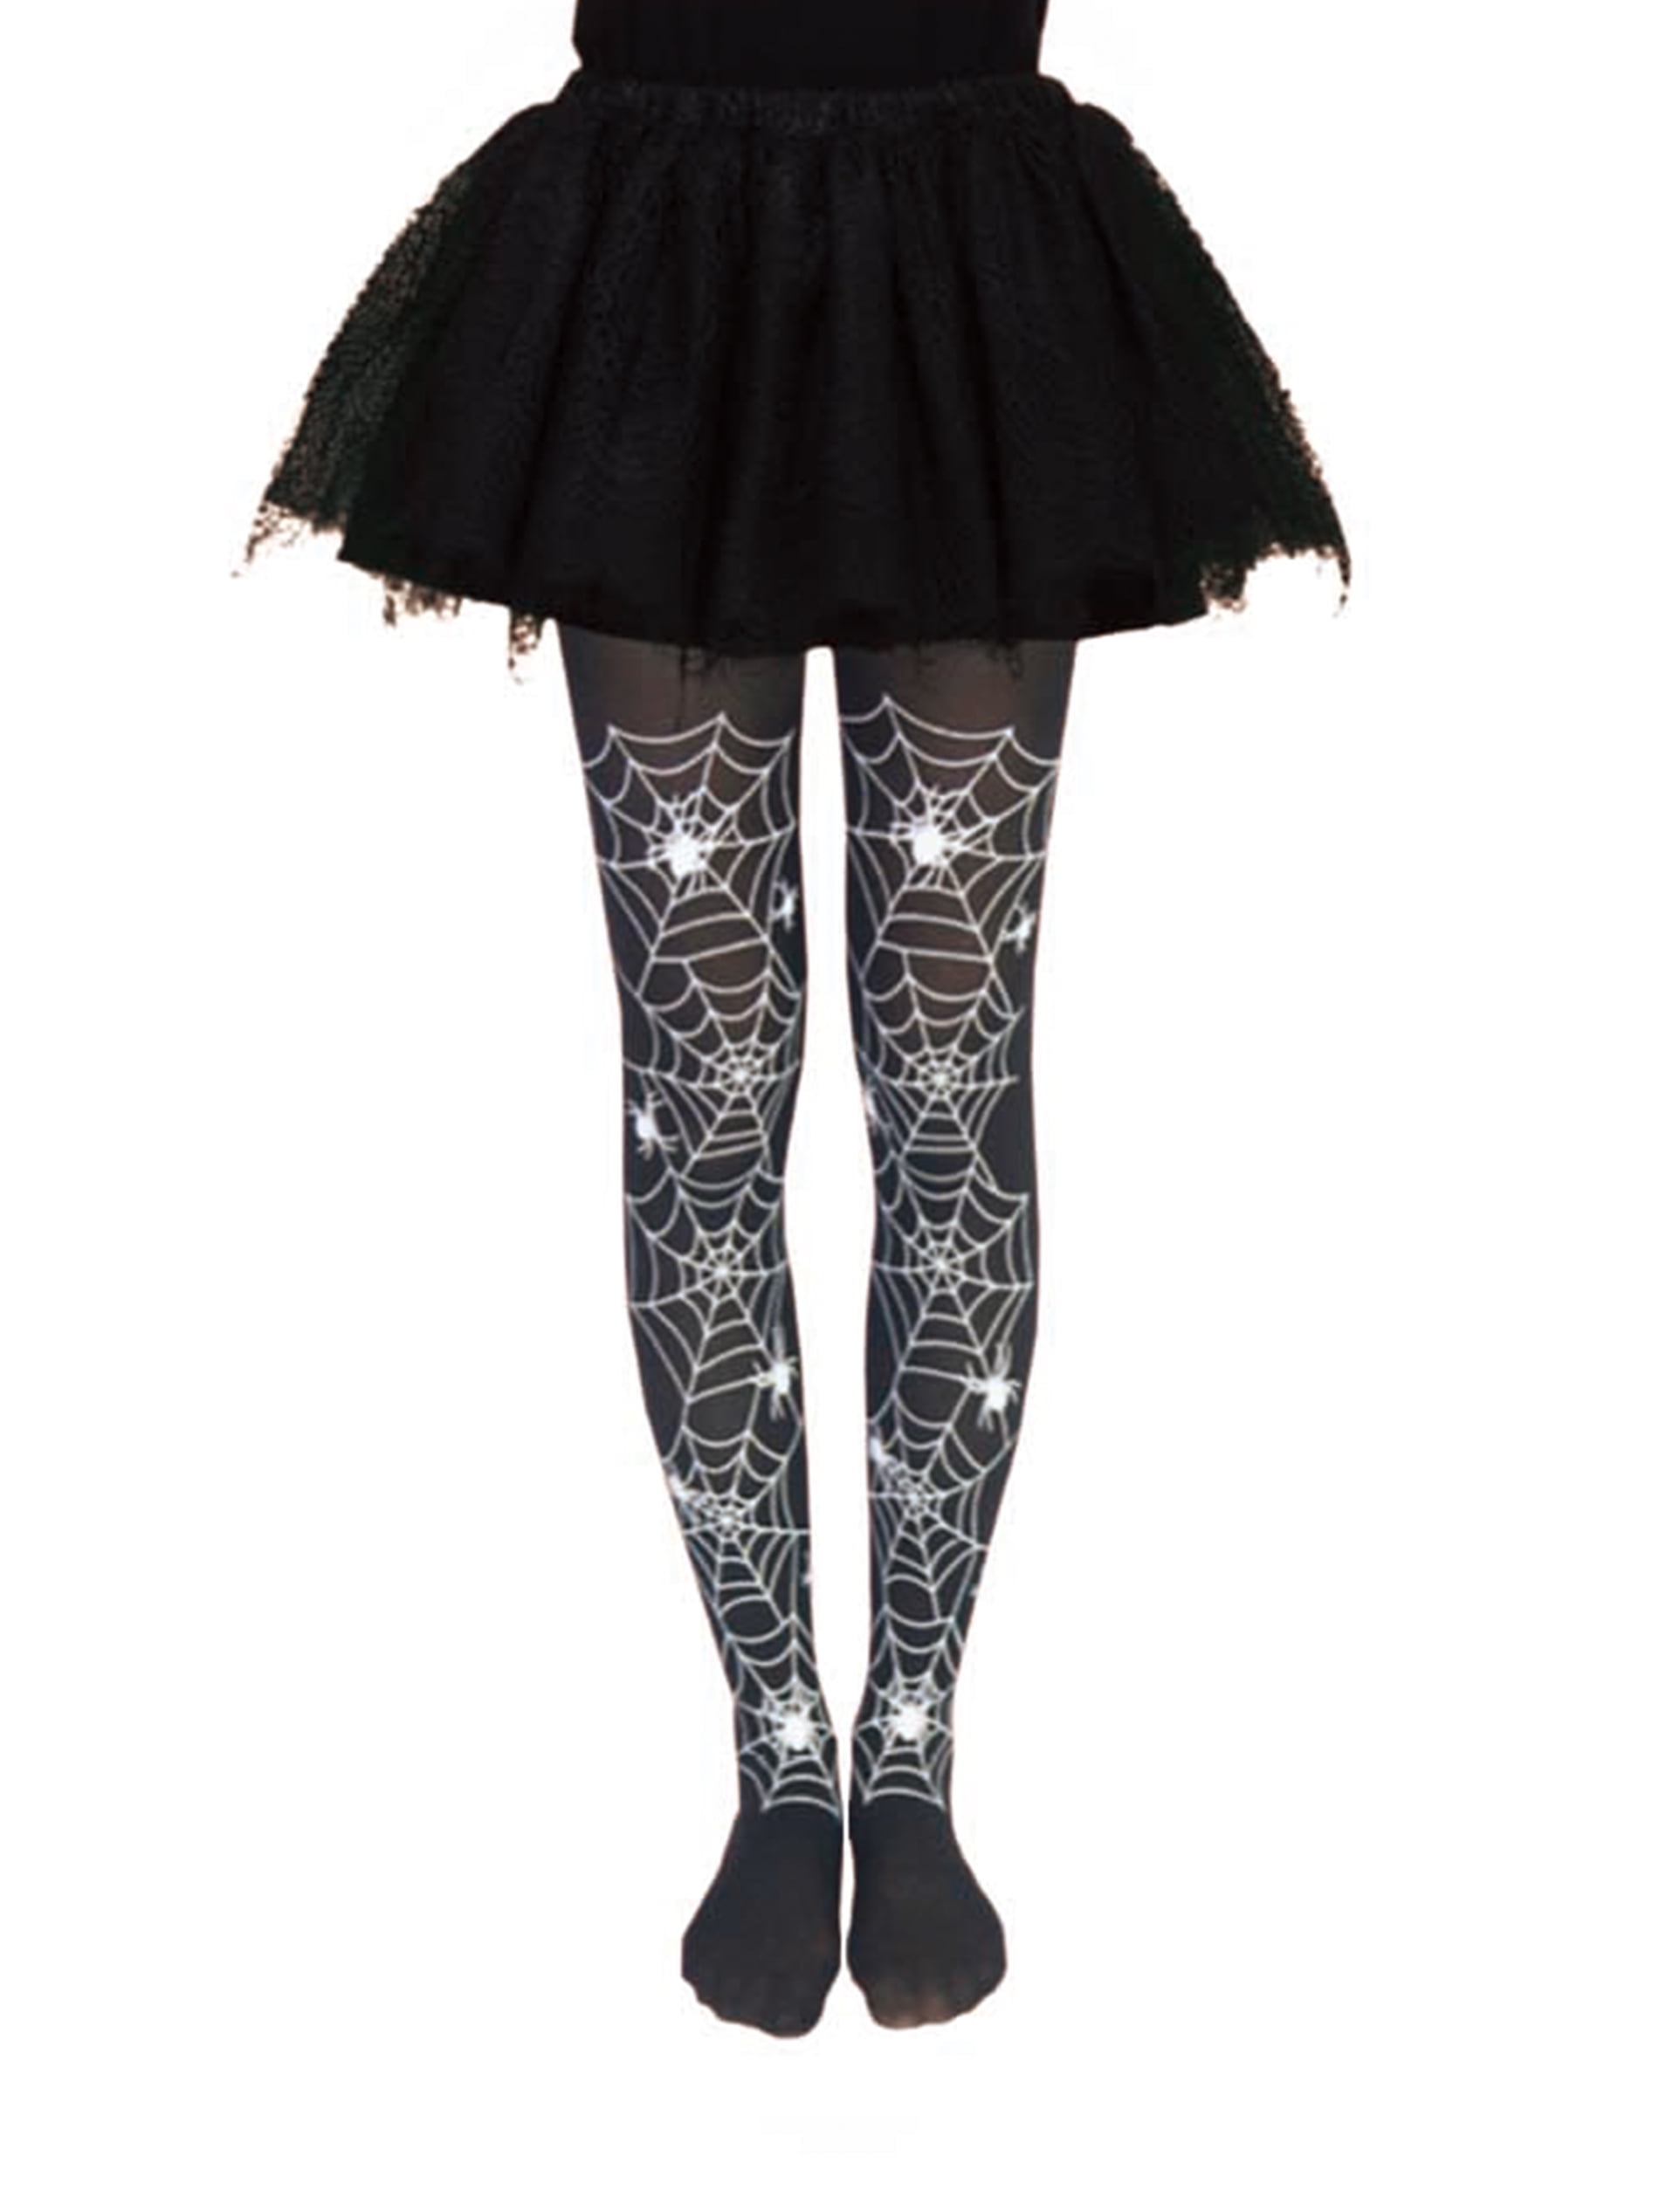 SIBOSUN Halloween Women Skeleton Gloves Stockings Socks Costume Pantyhose Black